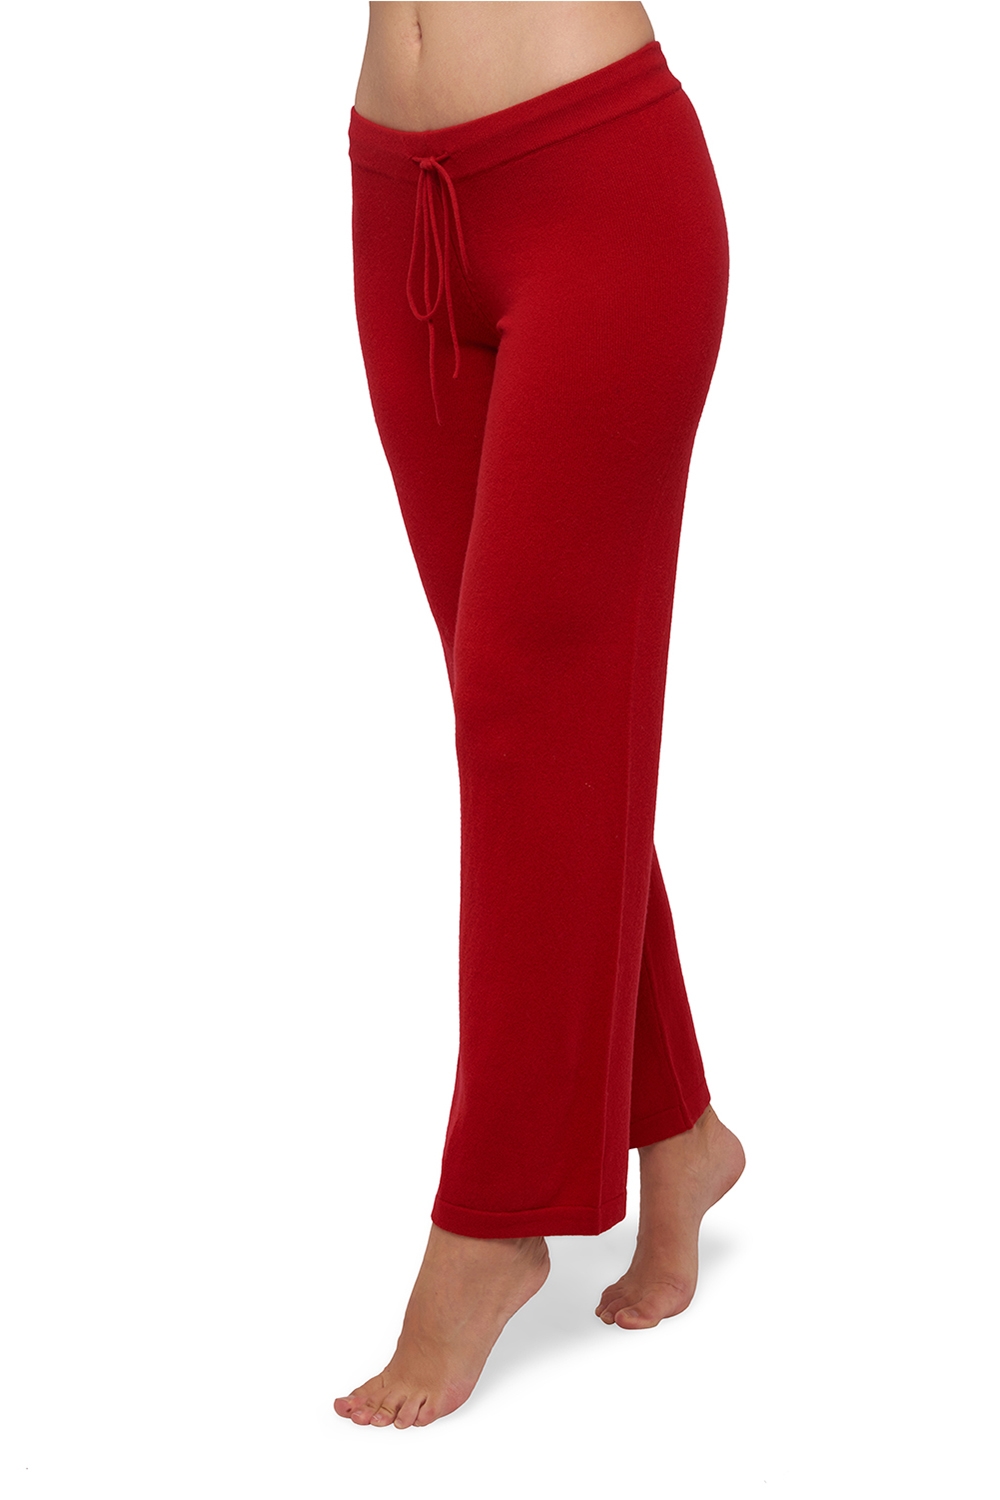 Cachemire pantalon legging femme malice rouge velours 4xl